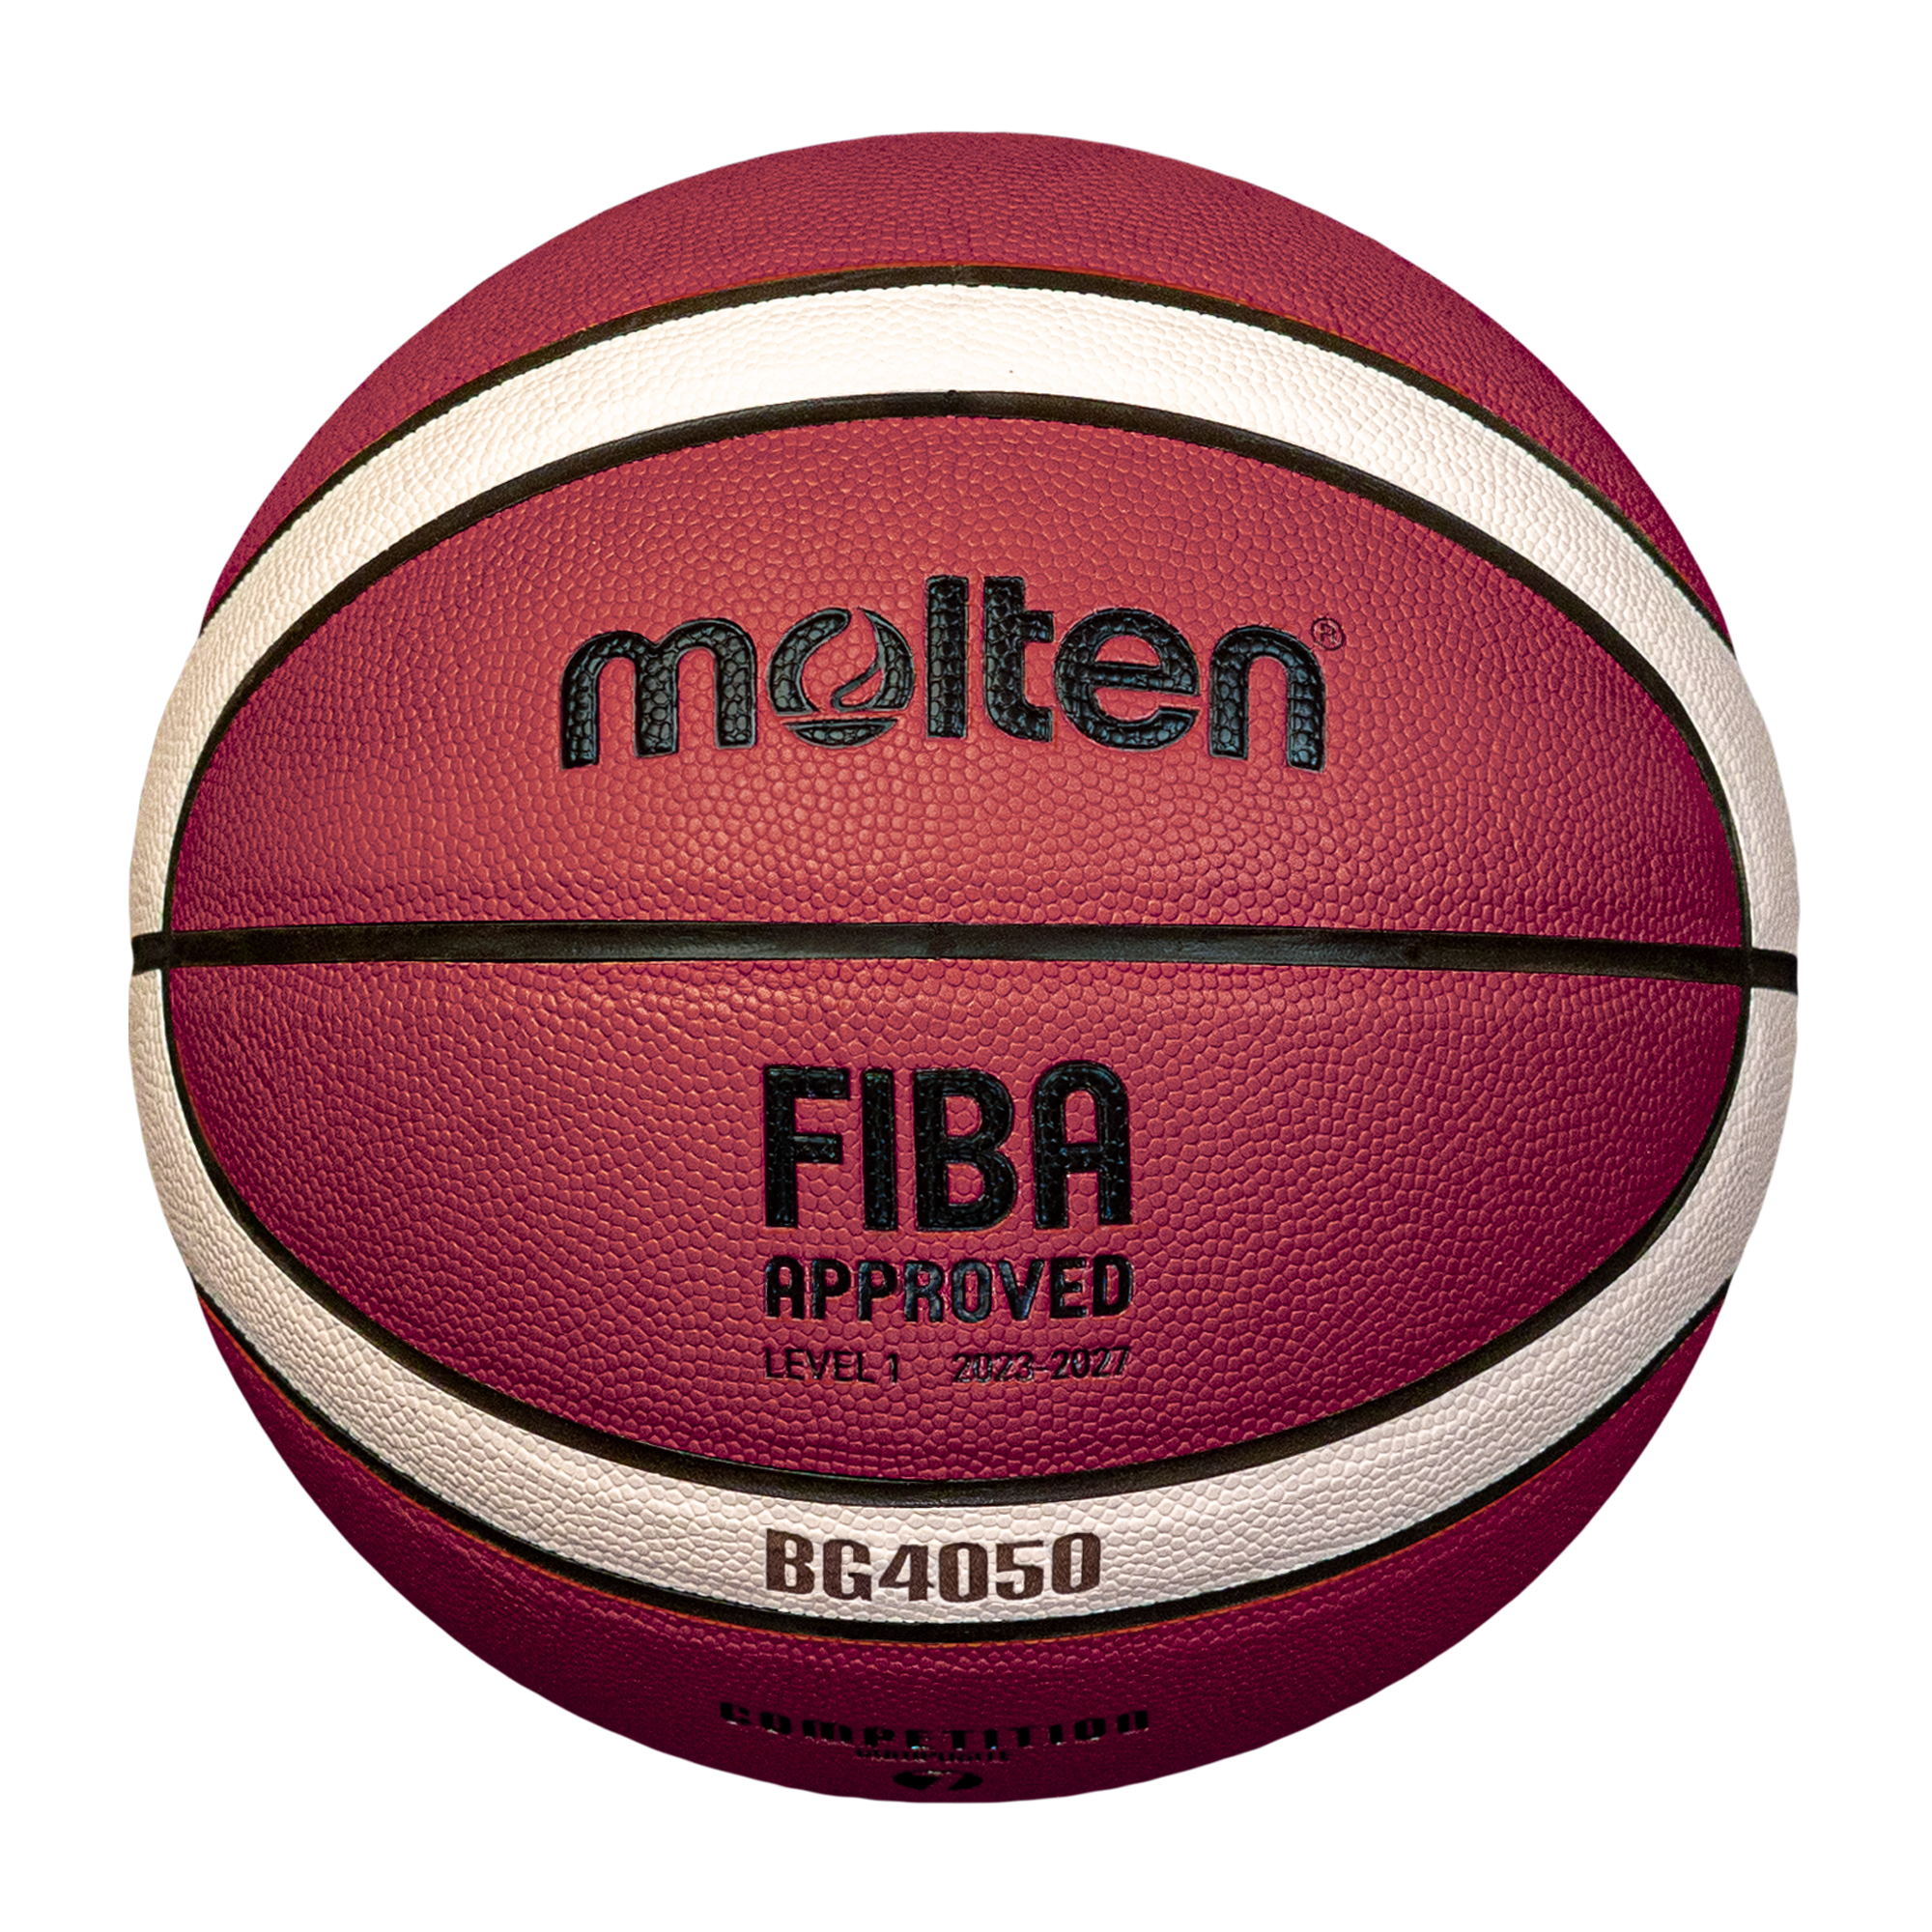 molten-basketball-B7G4050-DBB-S1_1.png